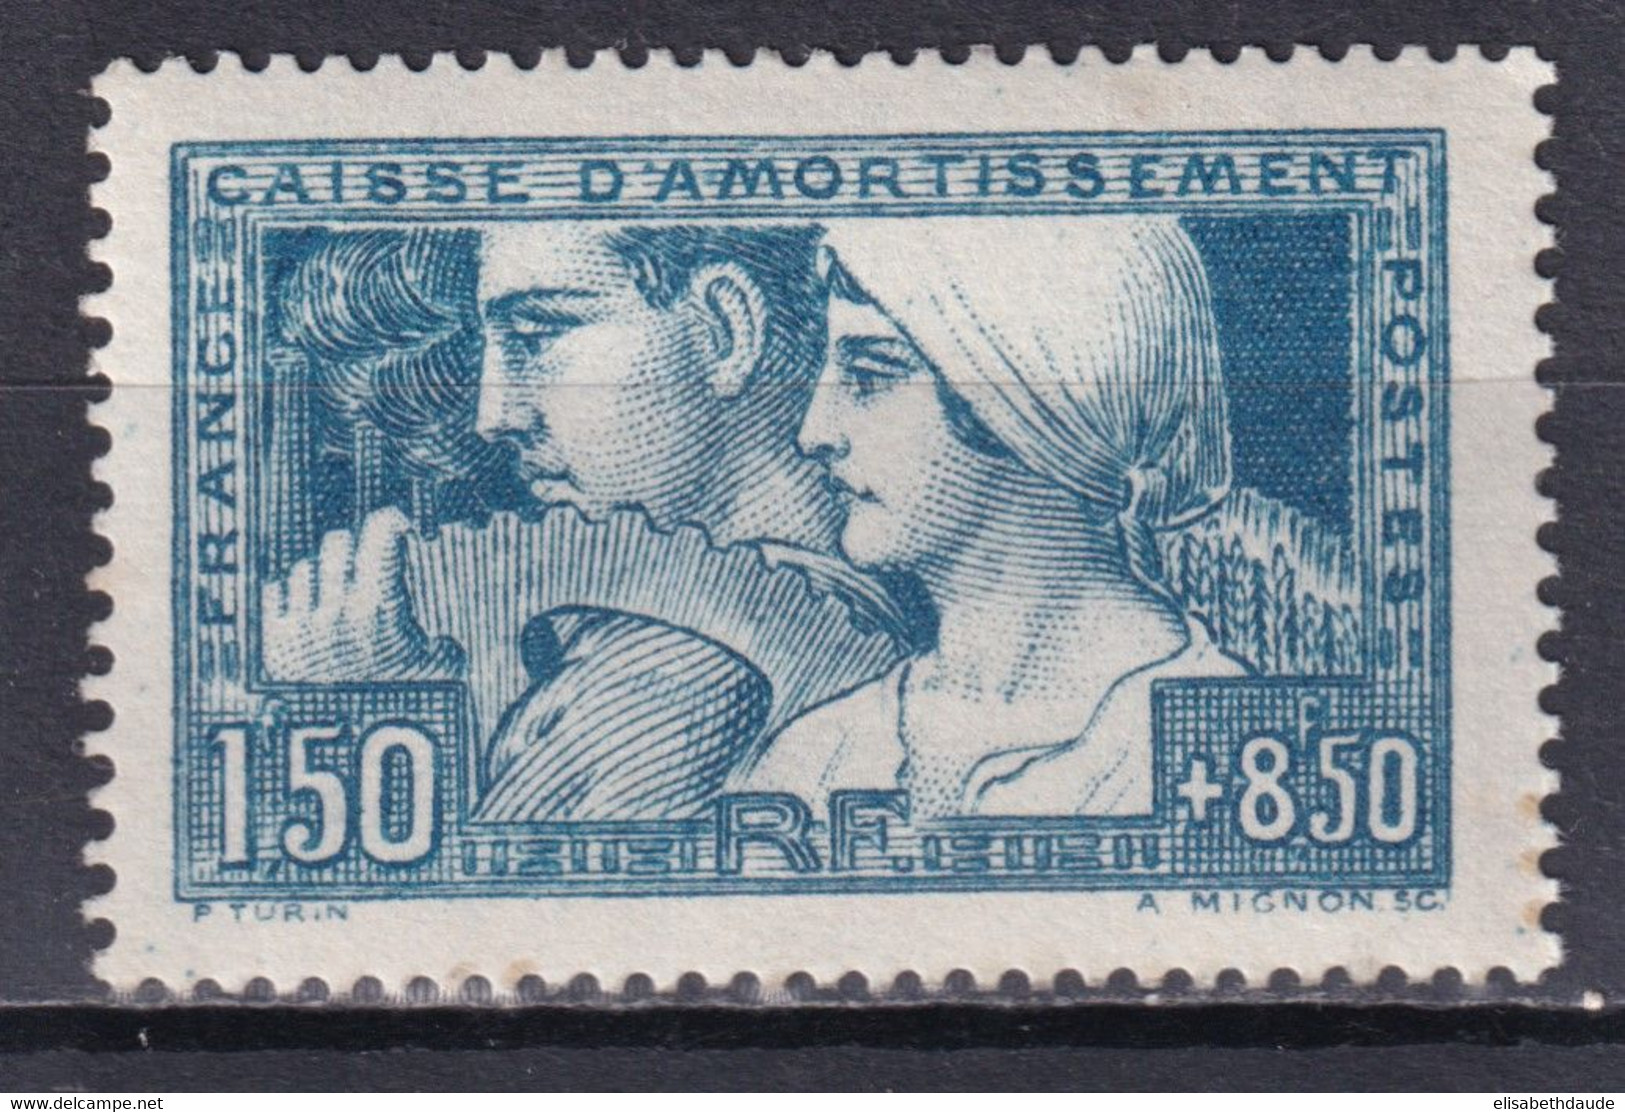 1928 - YVERT N° 252 (ETAT I) ** MNH (GOMME TRES LEGEREMENT ALTEREE) - COTE = 260 EUR. - CAISSE AMORTISSEMENT - 1927-31 Caisse D'Amortissement